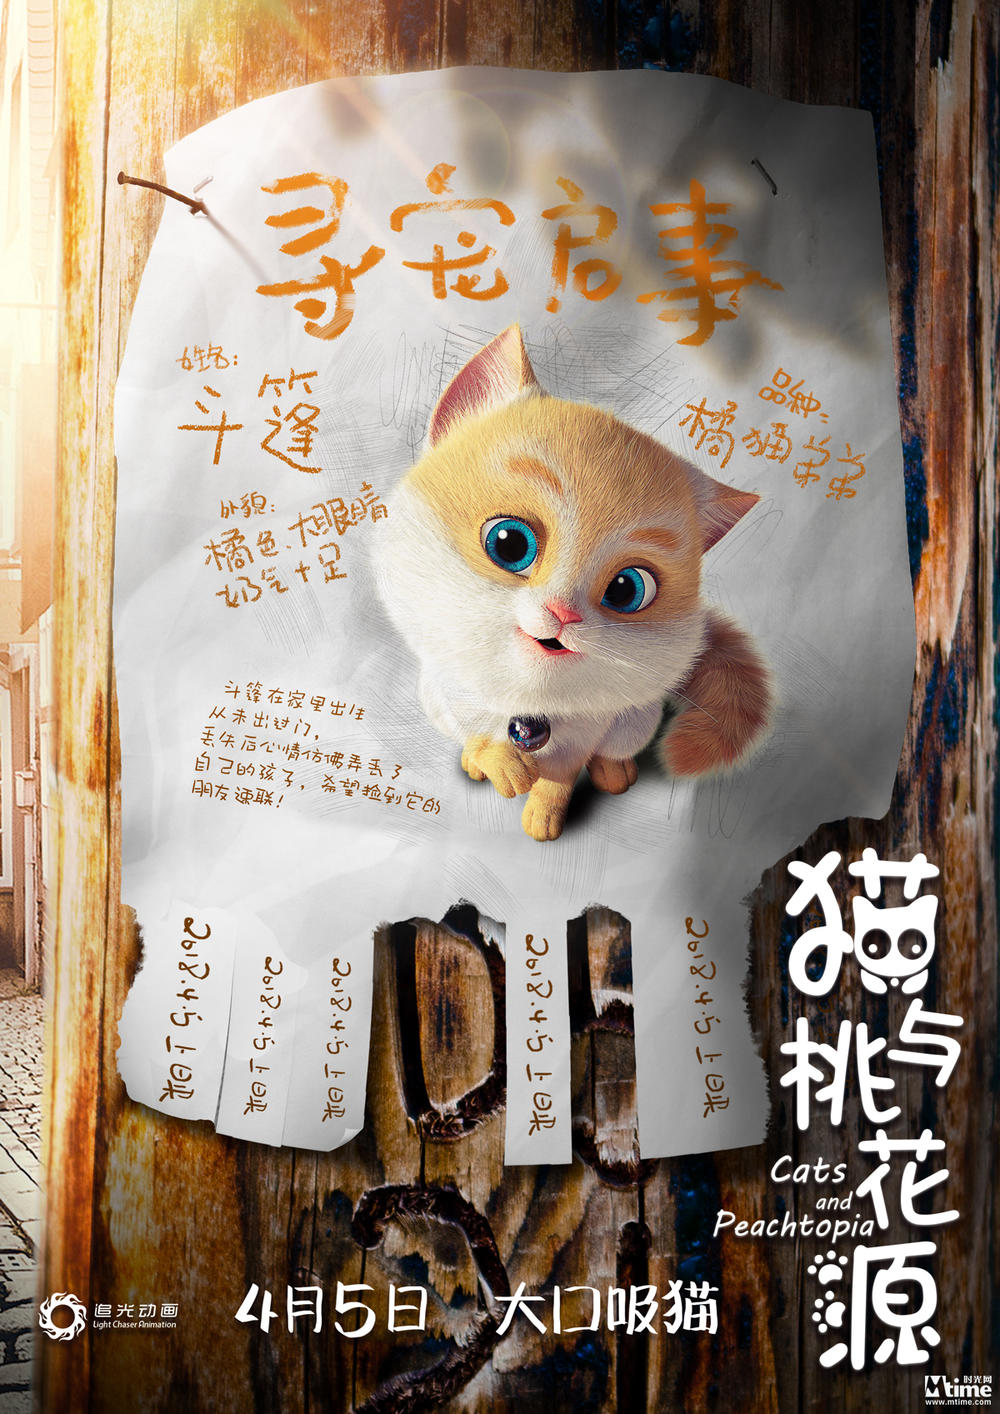 《猫与桃花源》“寻宠”版海报出炉 主角父子猫“毯子”“斗篷”俘虏众多猫奴(图1)